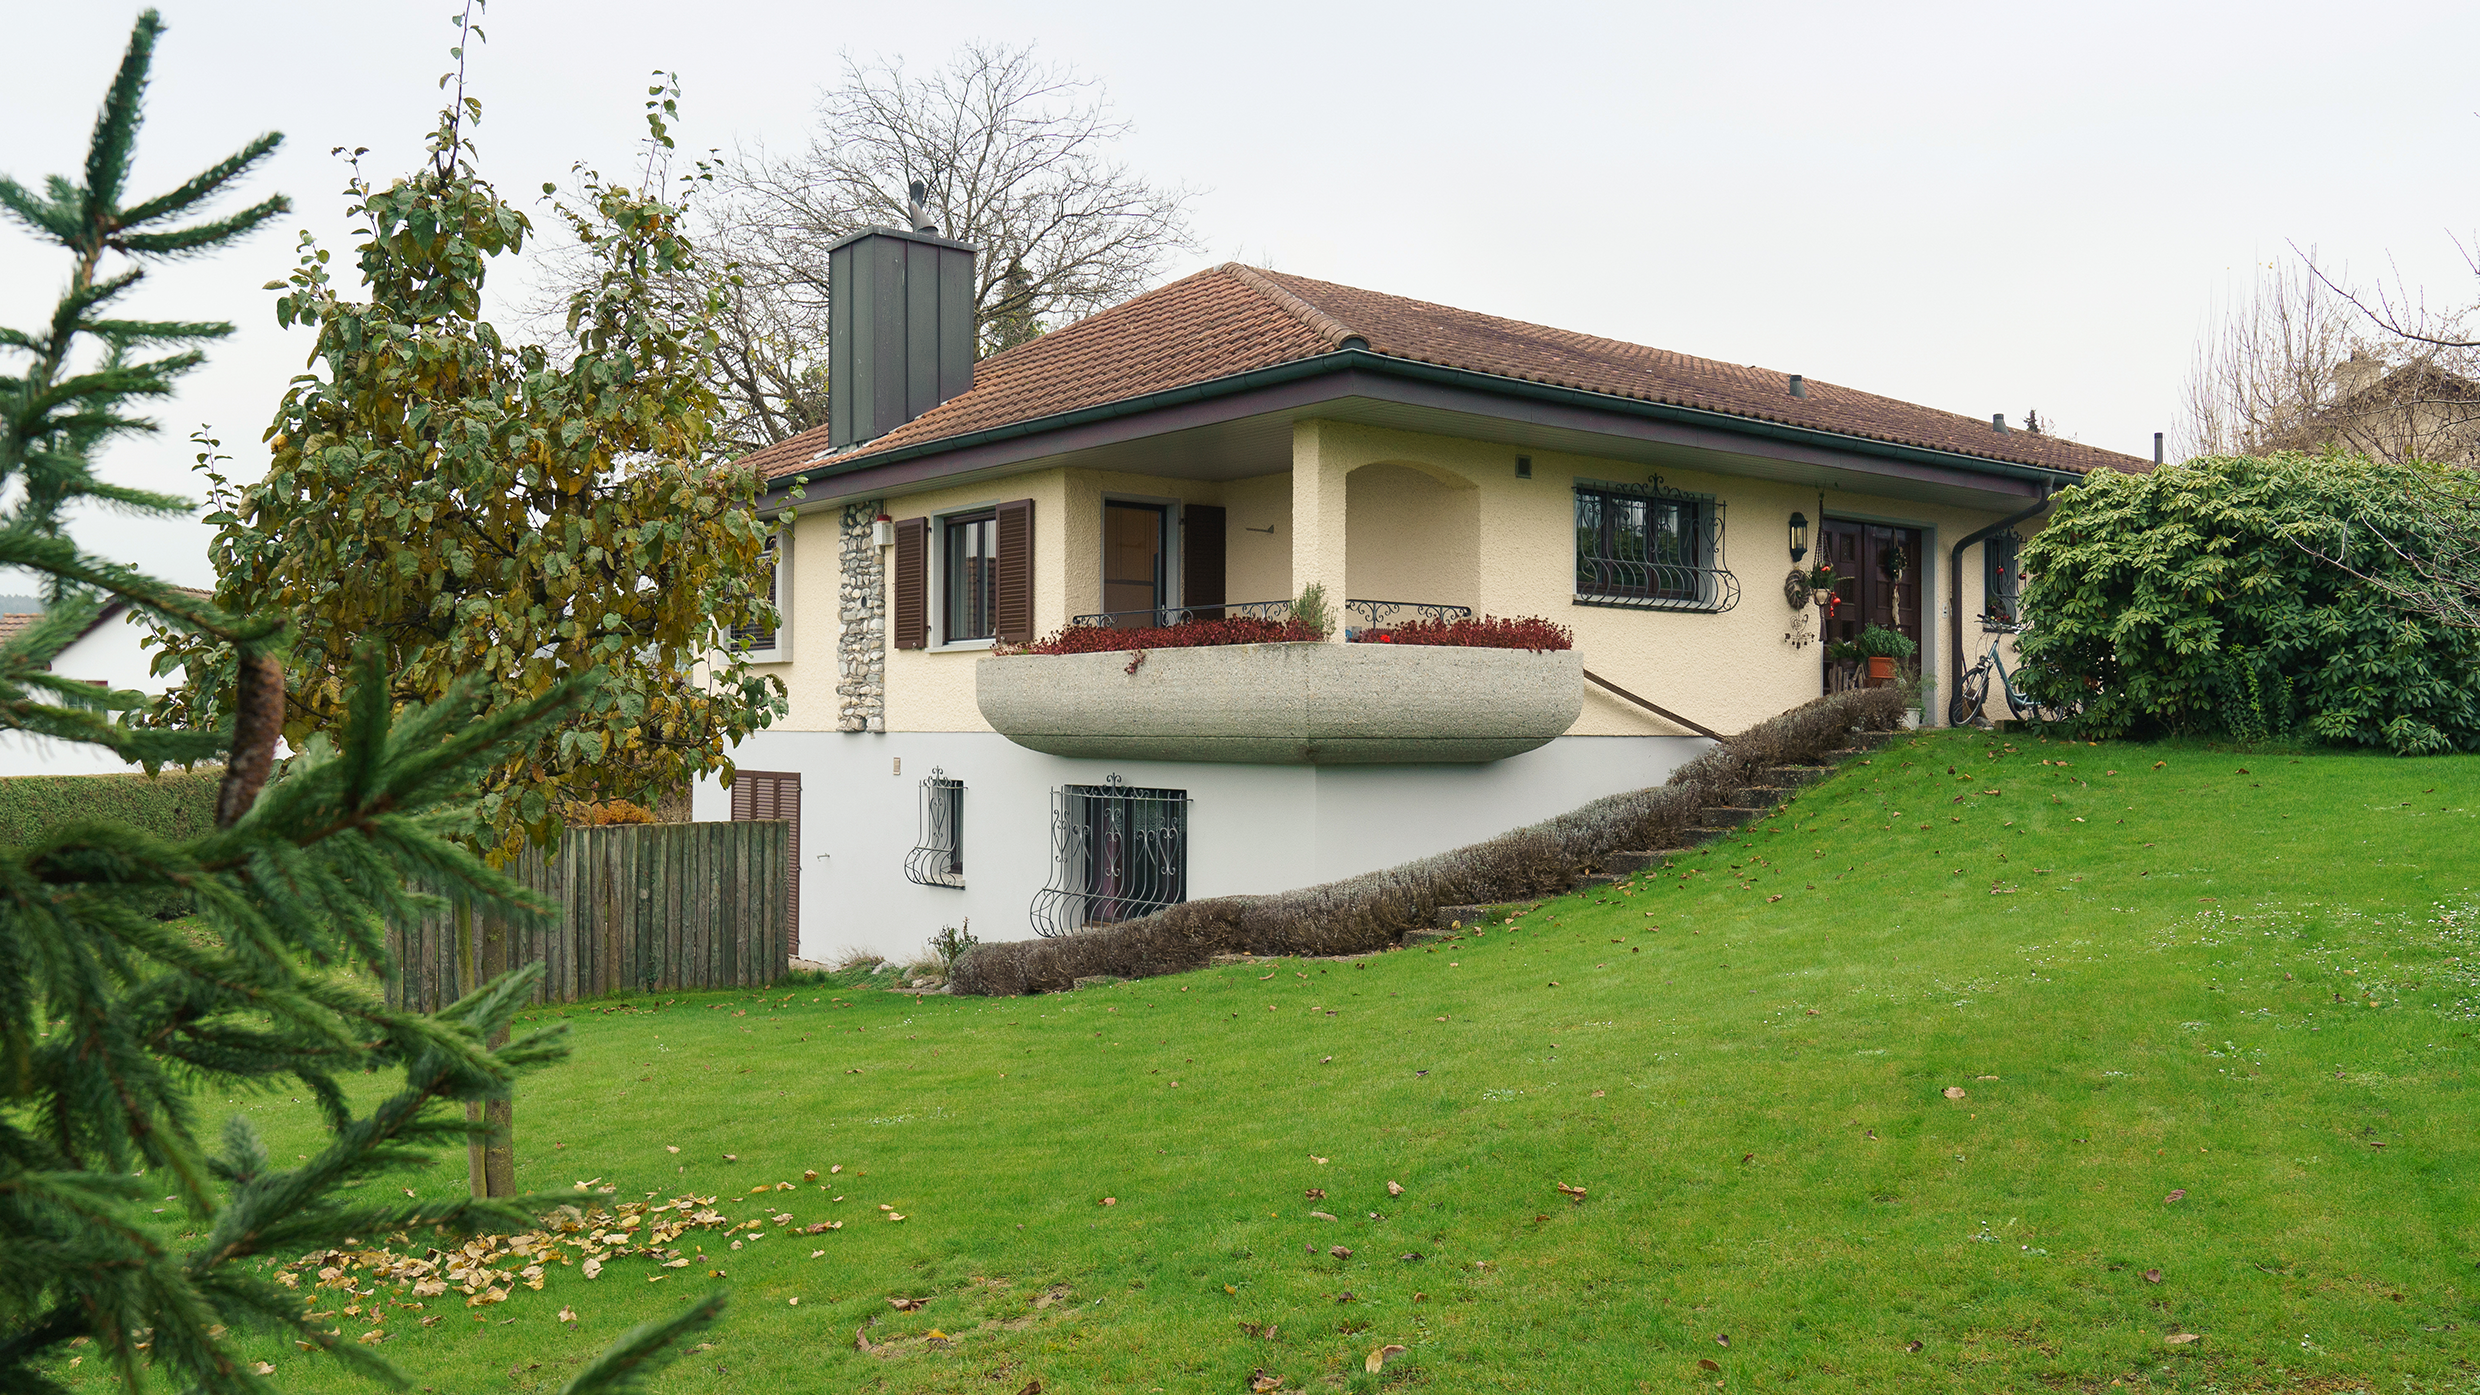 Das malerische Anwesen von Meinrad Graf: Ein herrschaftliches Haus, umgeben von saftigen Wiesen und grünen Bäumen, strahlt Ruhe und Eleganz aus.